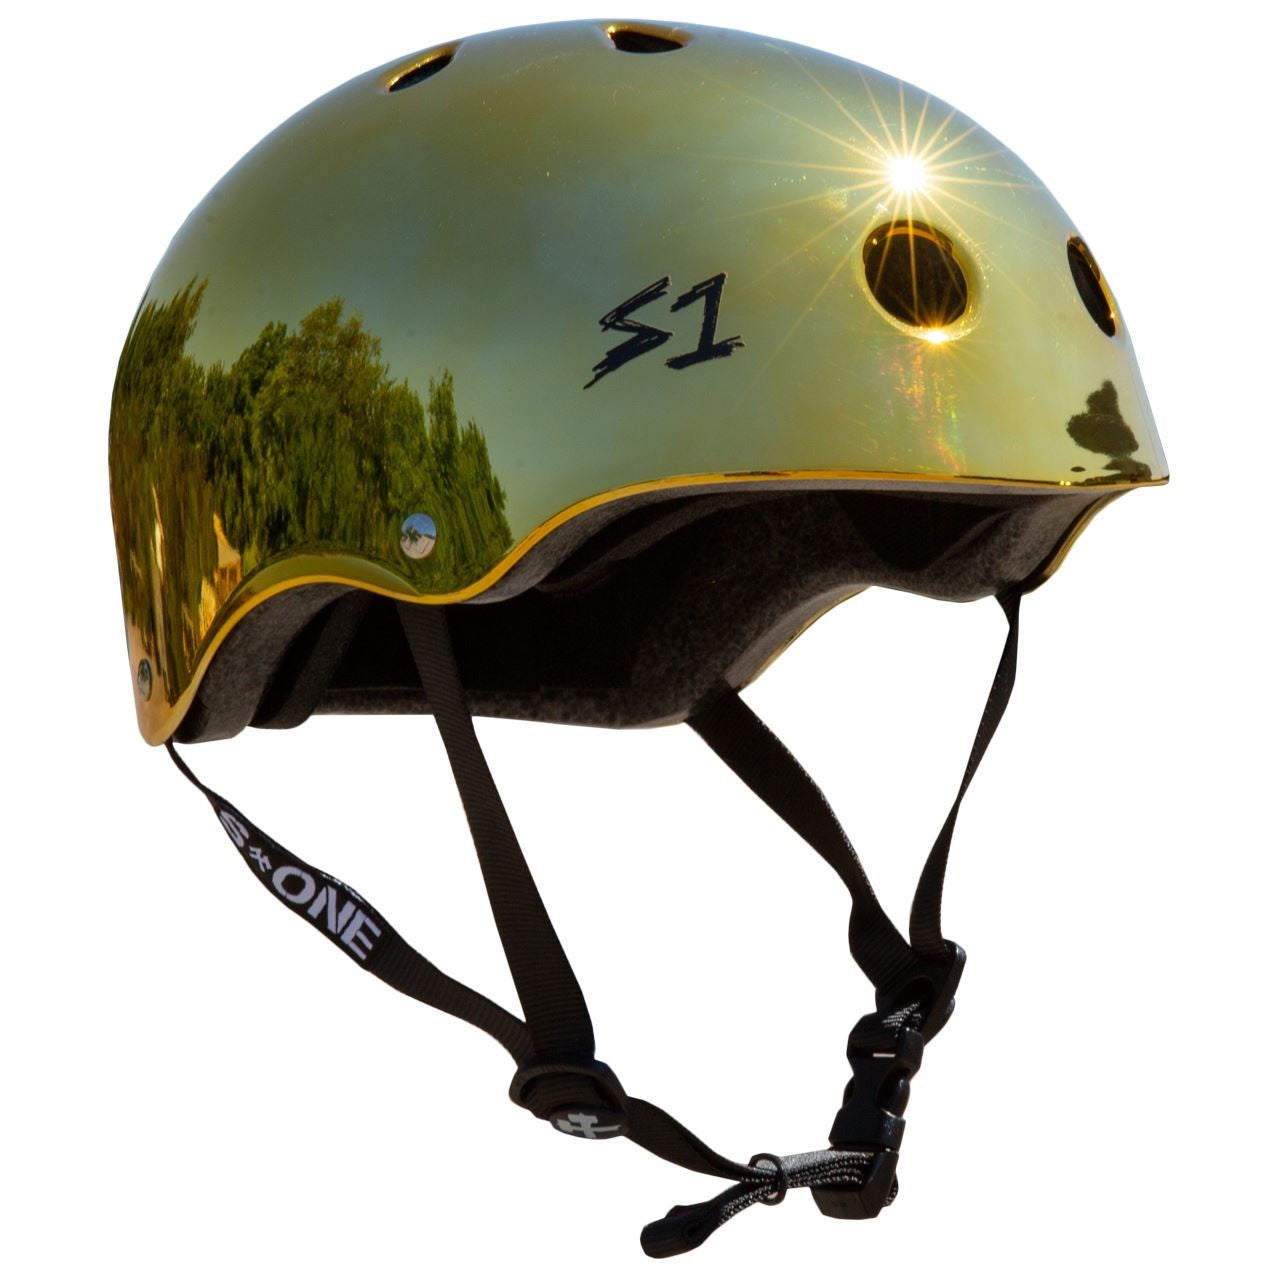 S1 Lifer Helmet - Gold Mirror